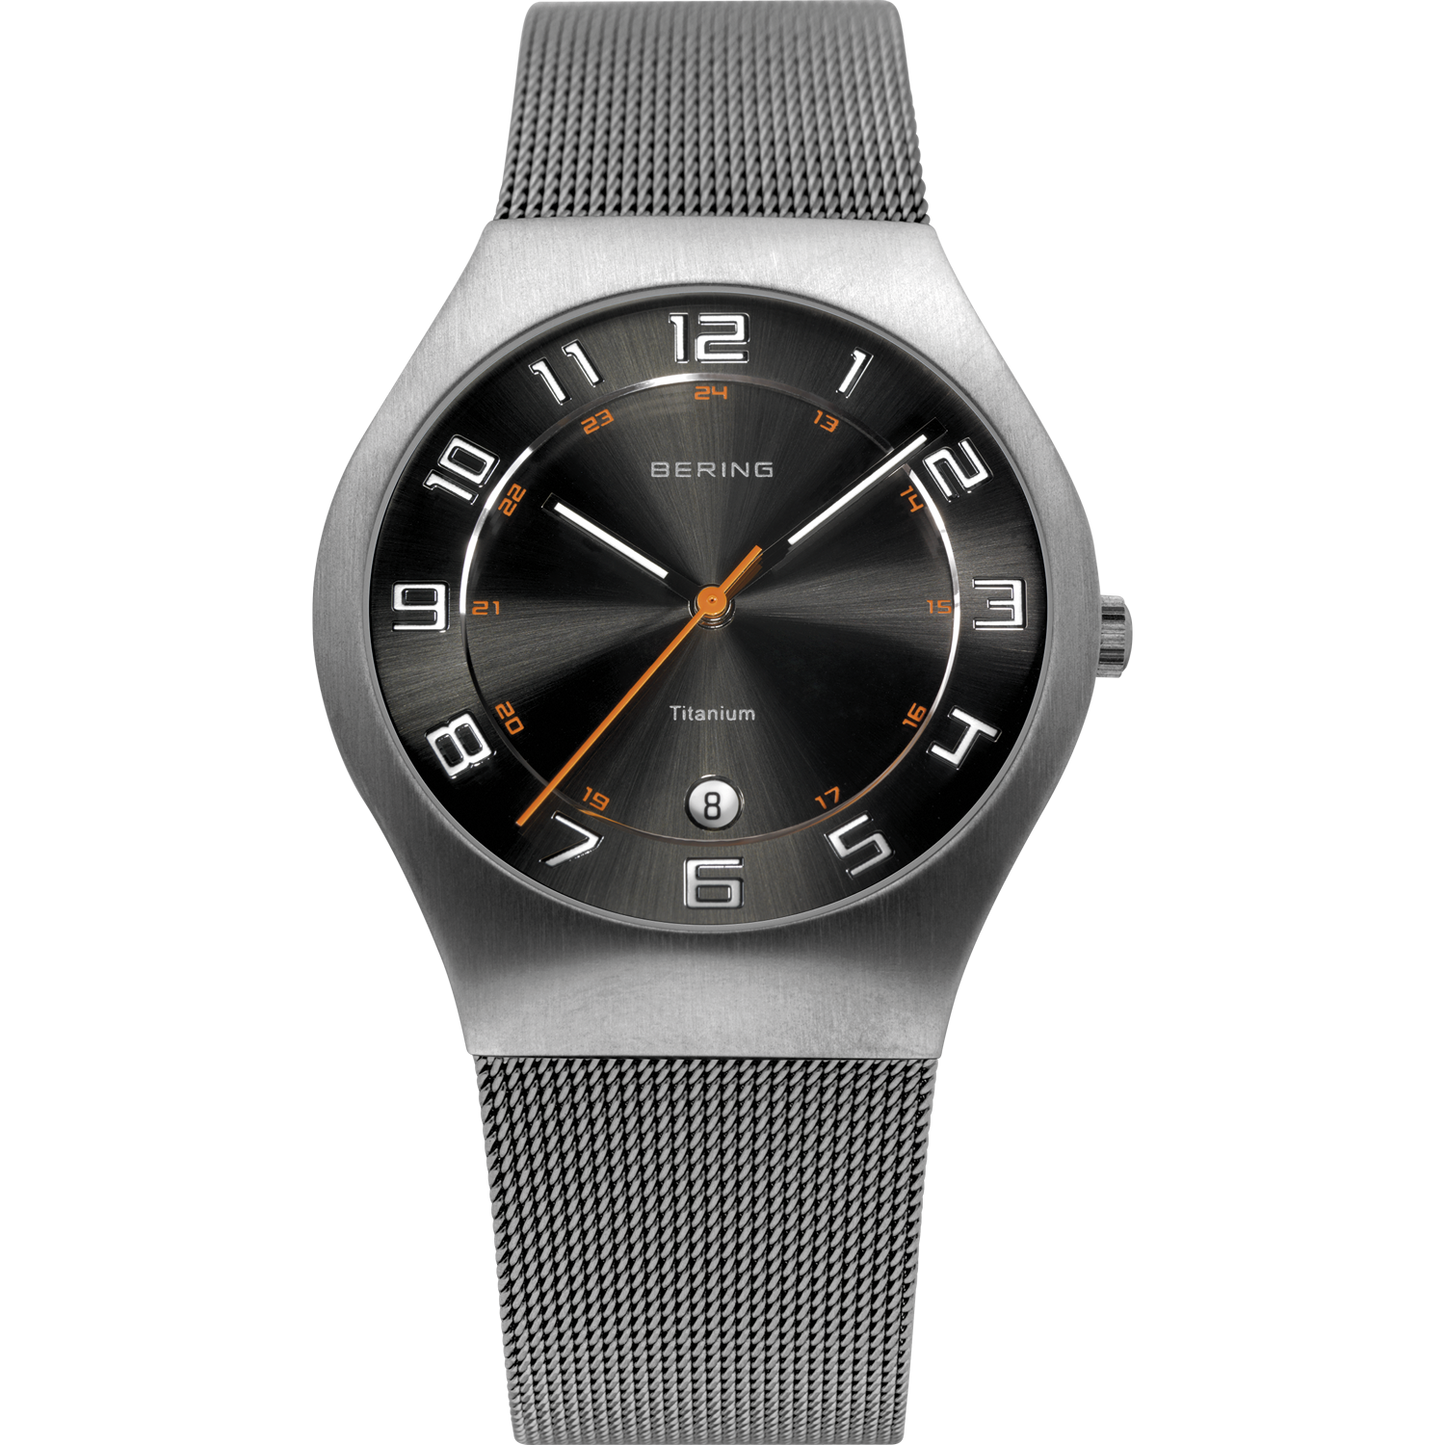 Bering-Armbanduhr Titanium schwarz-grau orange APAUB42229 - Schmuck & Uhren Andrea Panick